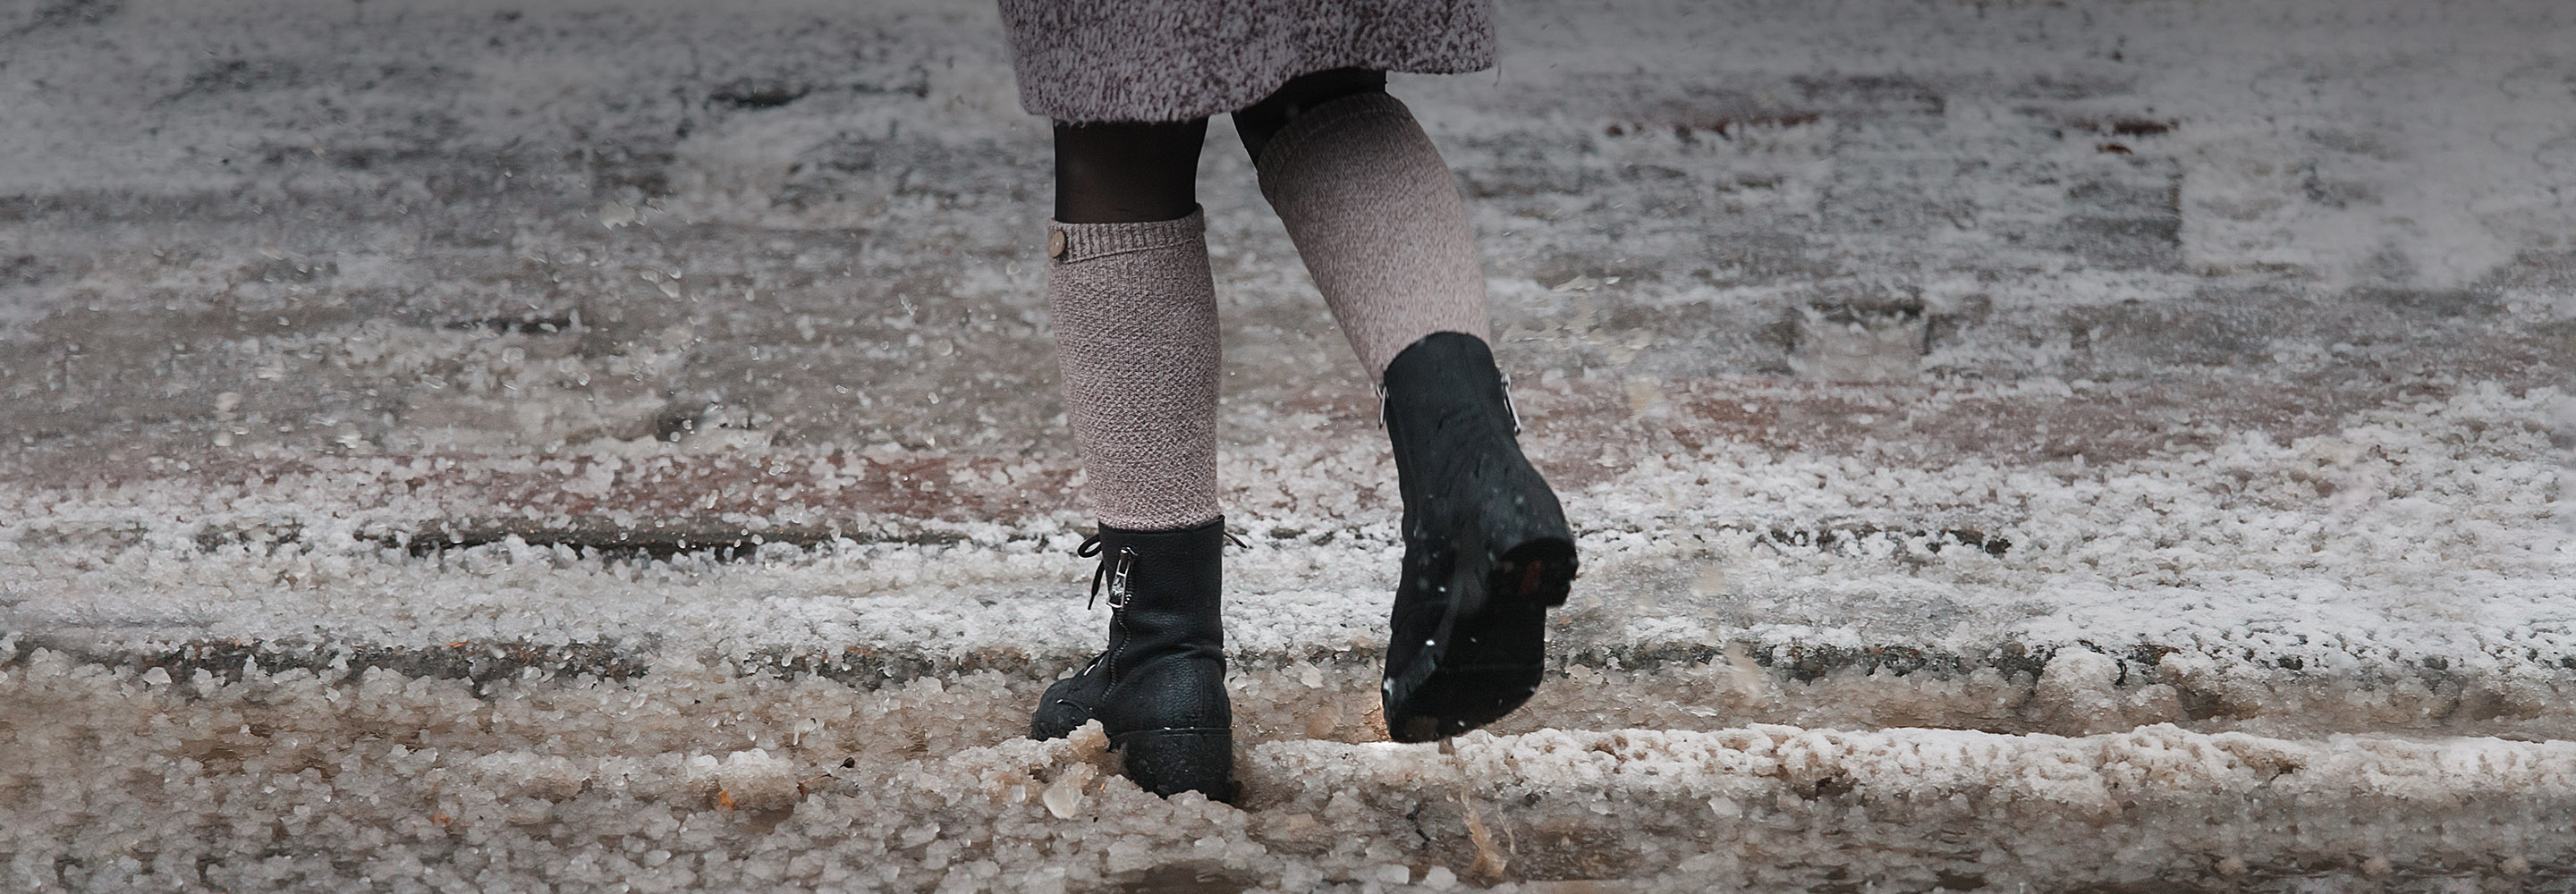 Где купить зимнюю обувь: список магазинов, в которых можно приобрестихорошую обувь на зиму